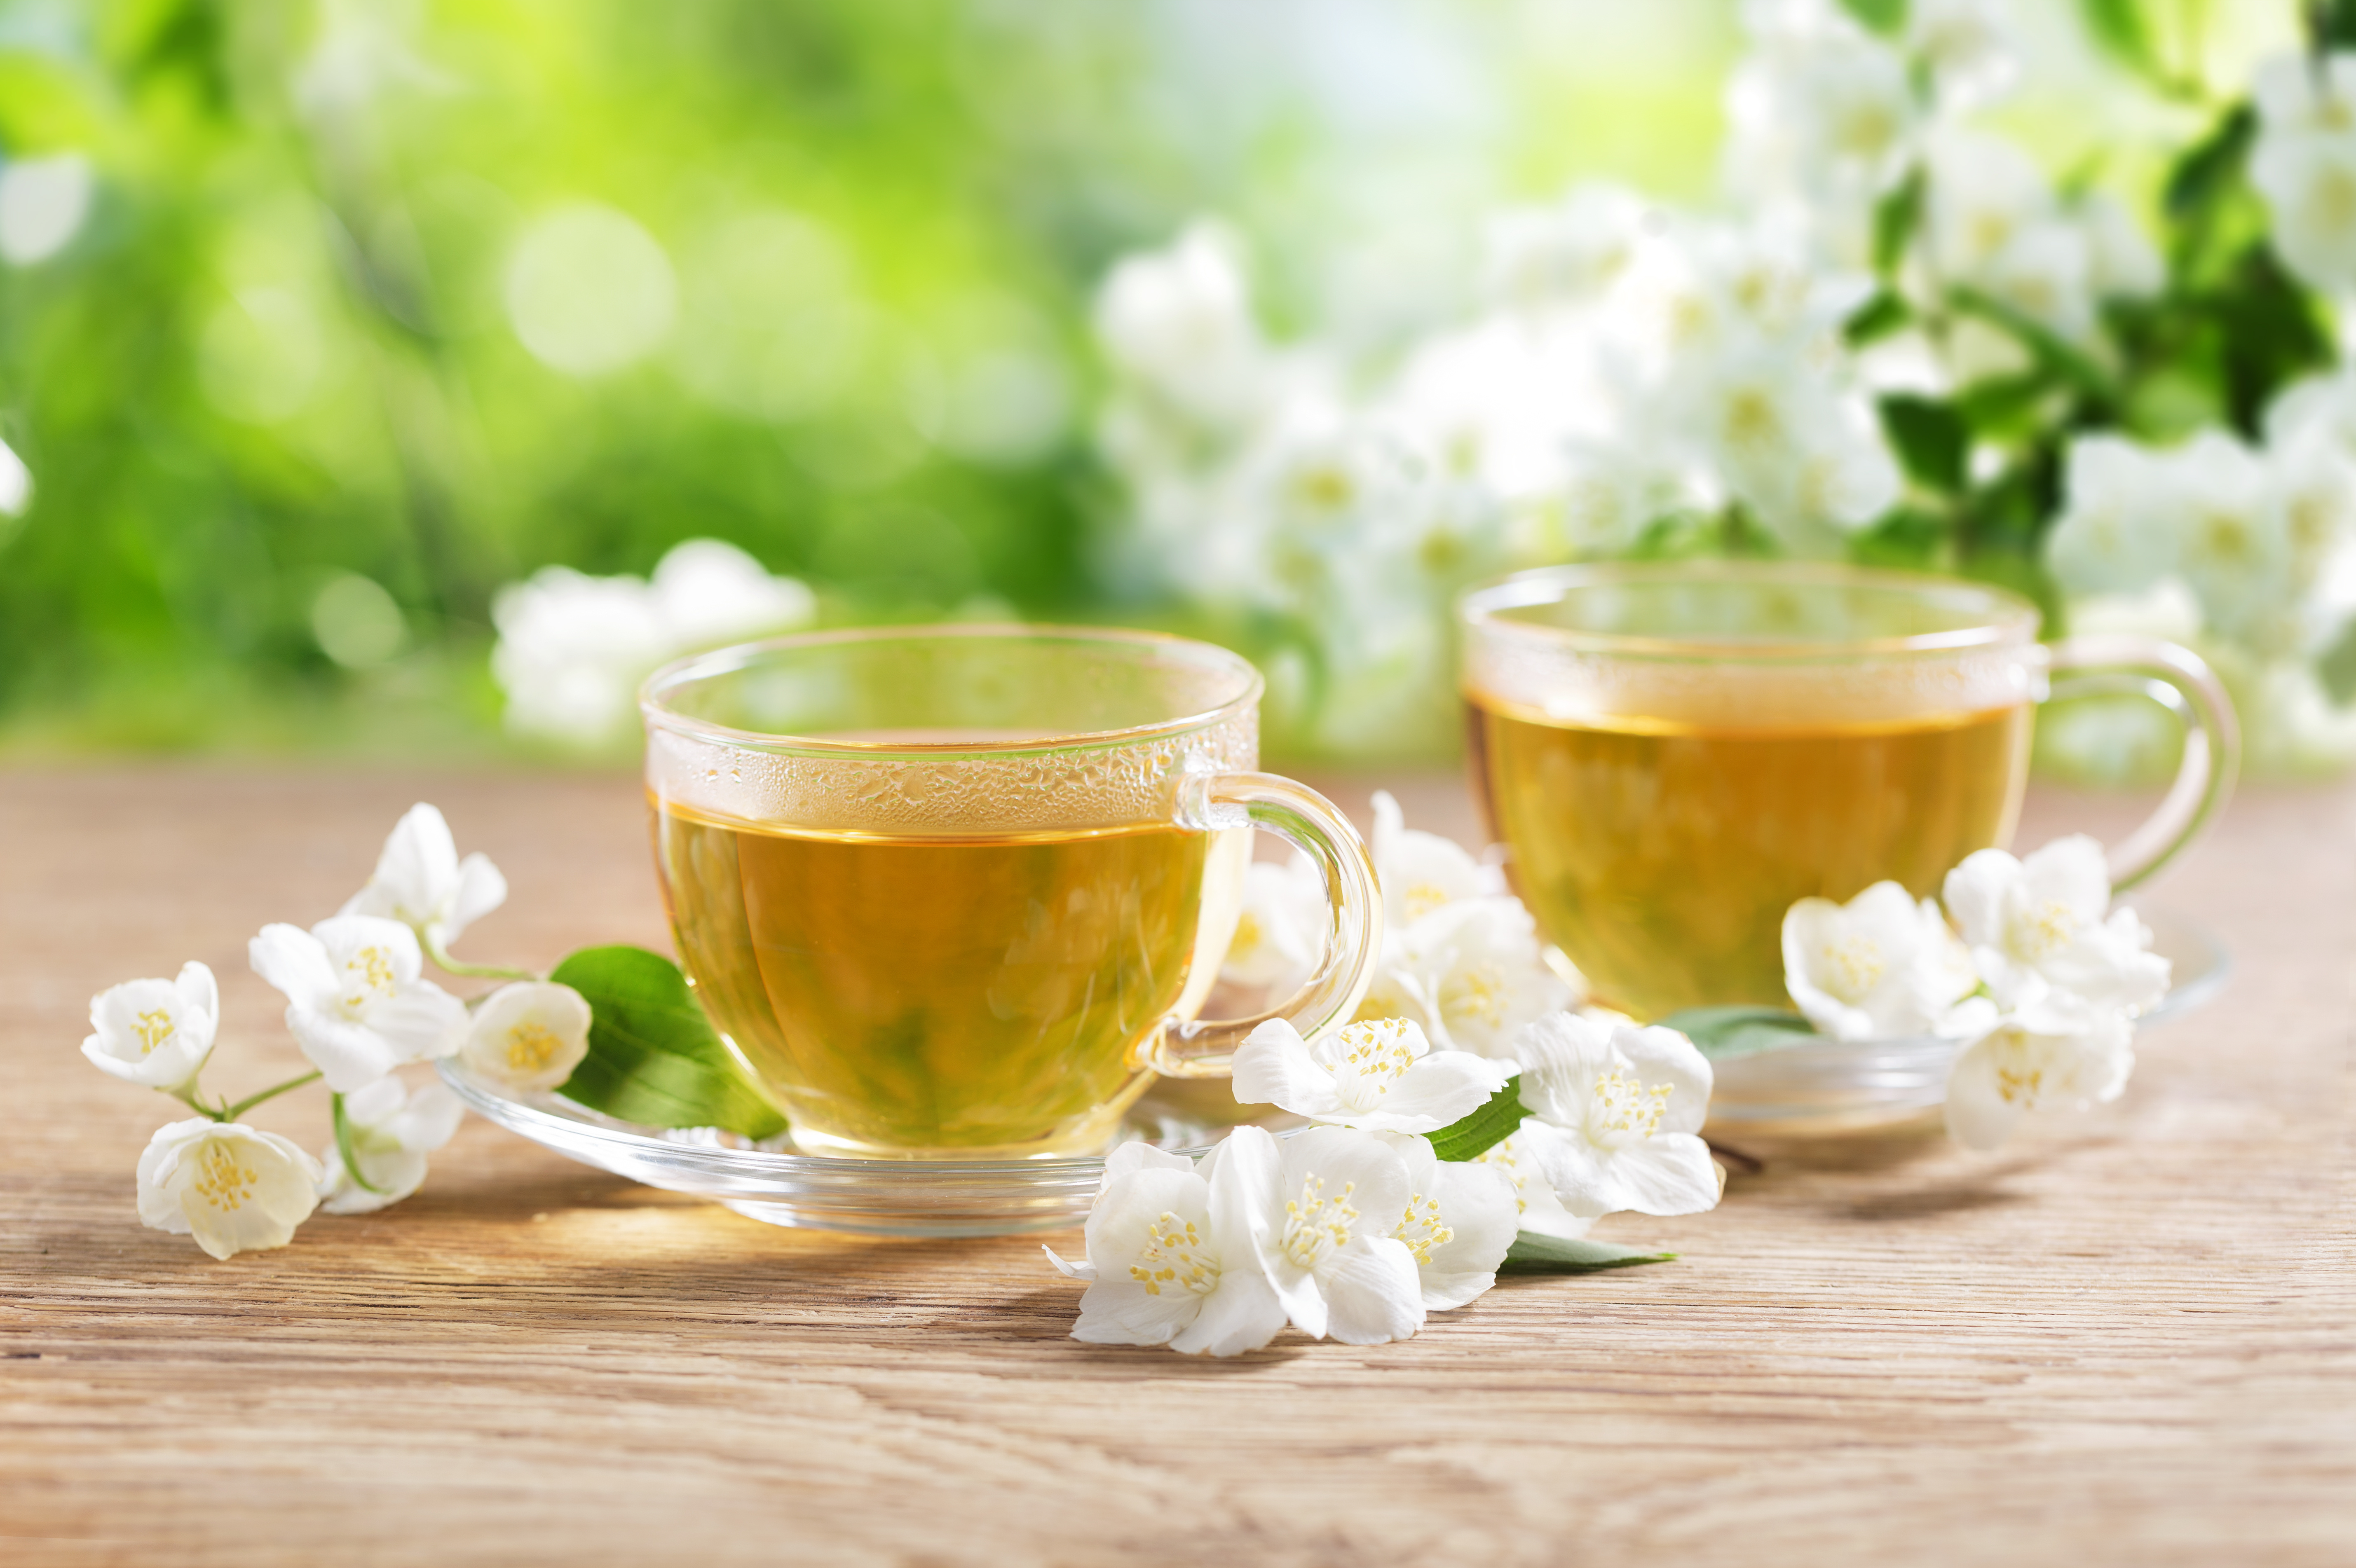 Arche de jasmin : vente en ligne de fleurs de thé au jasmin